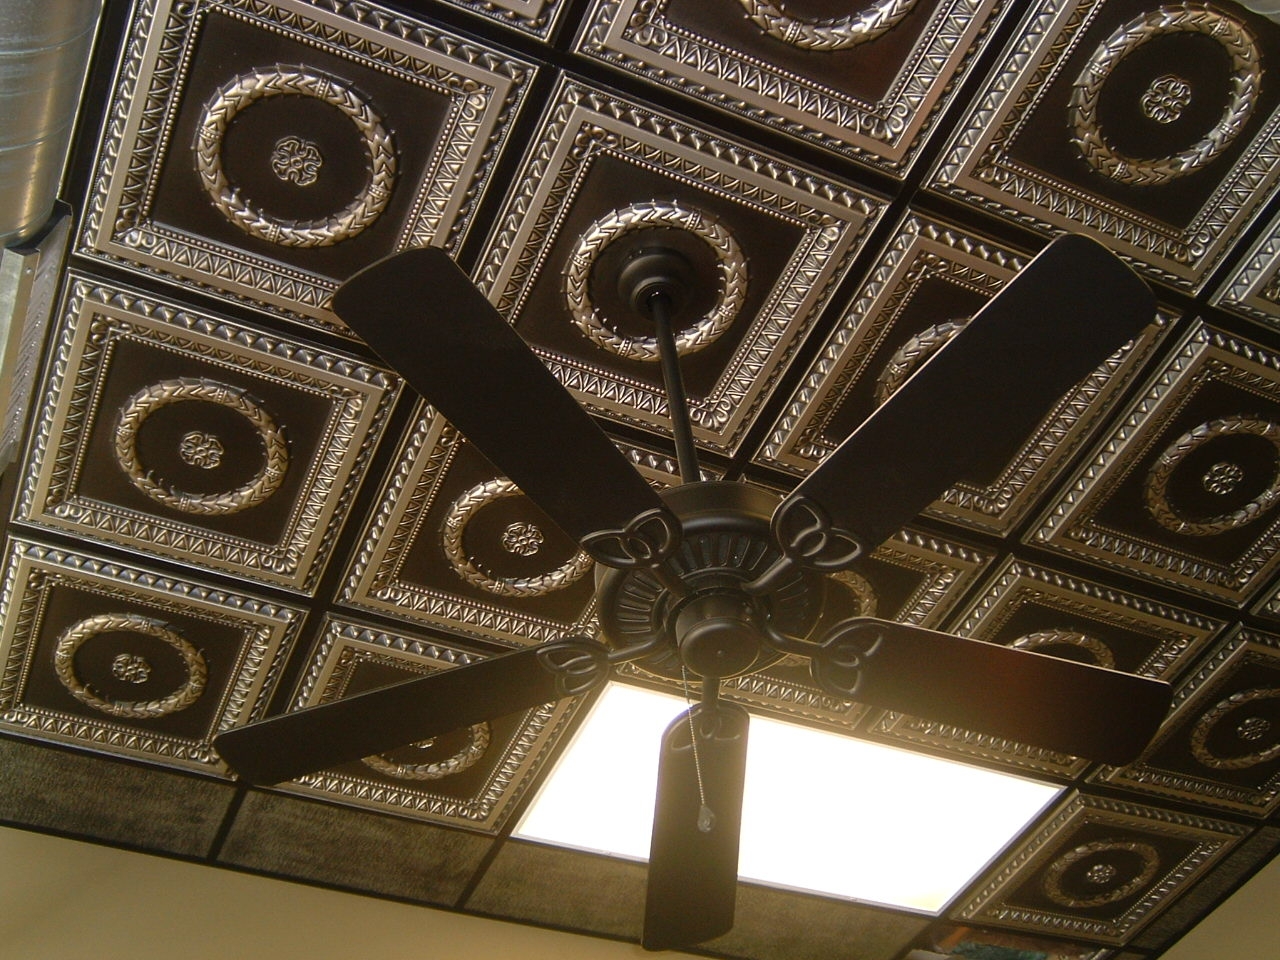 Decorative Ceiling Tiles Pvc Decorative Ceiling Tiles Pvc pvc ceiling tiles grid suspended 1280 X 960